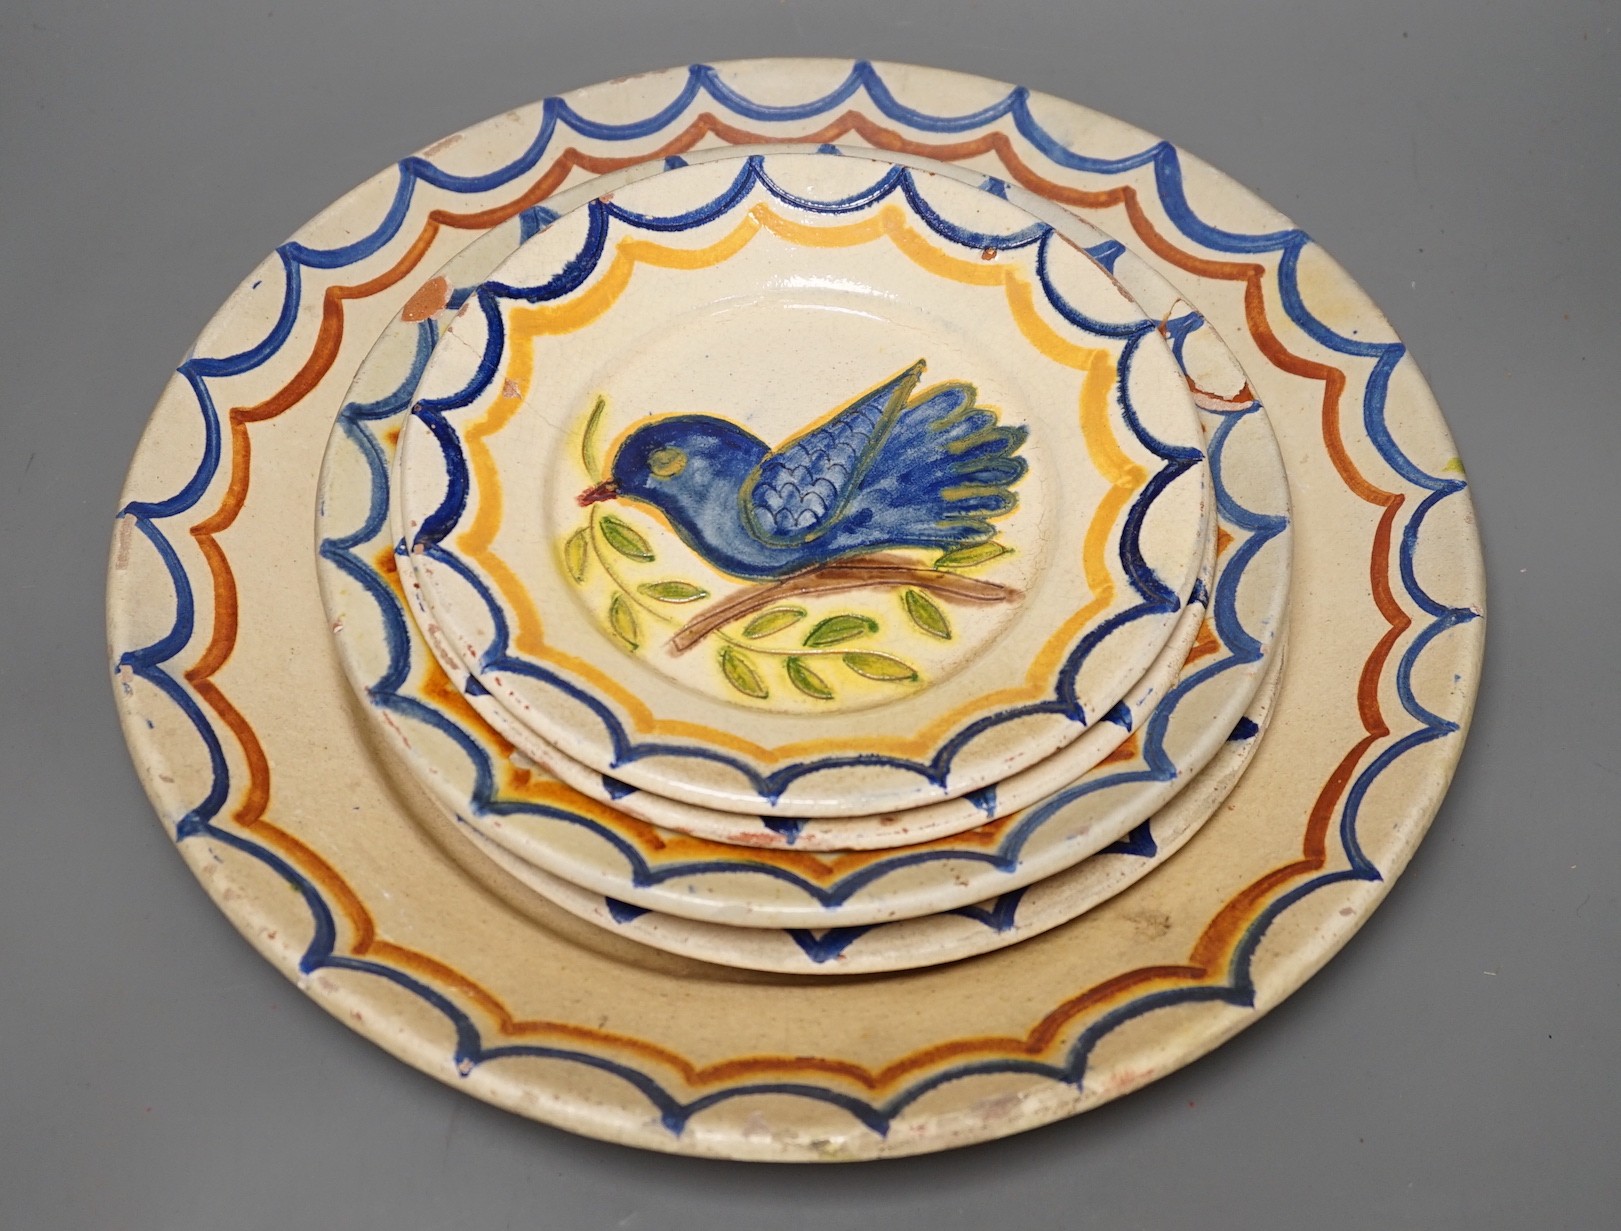 Five Portuguese provincial pottery plates, largest 35 cms diameter